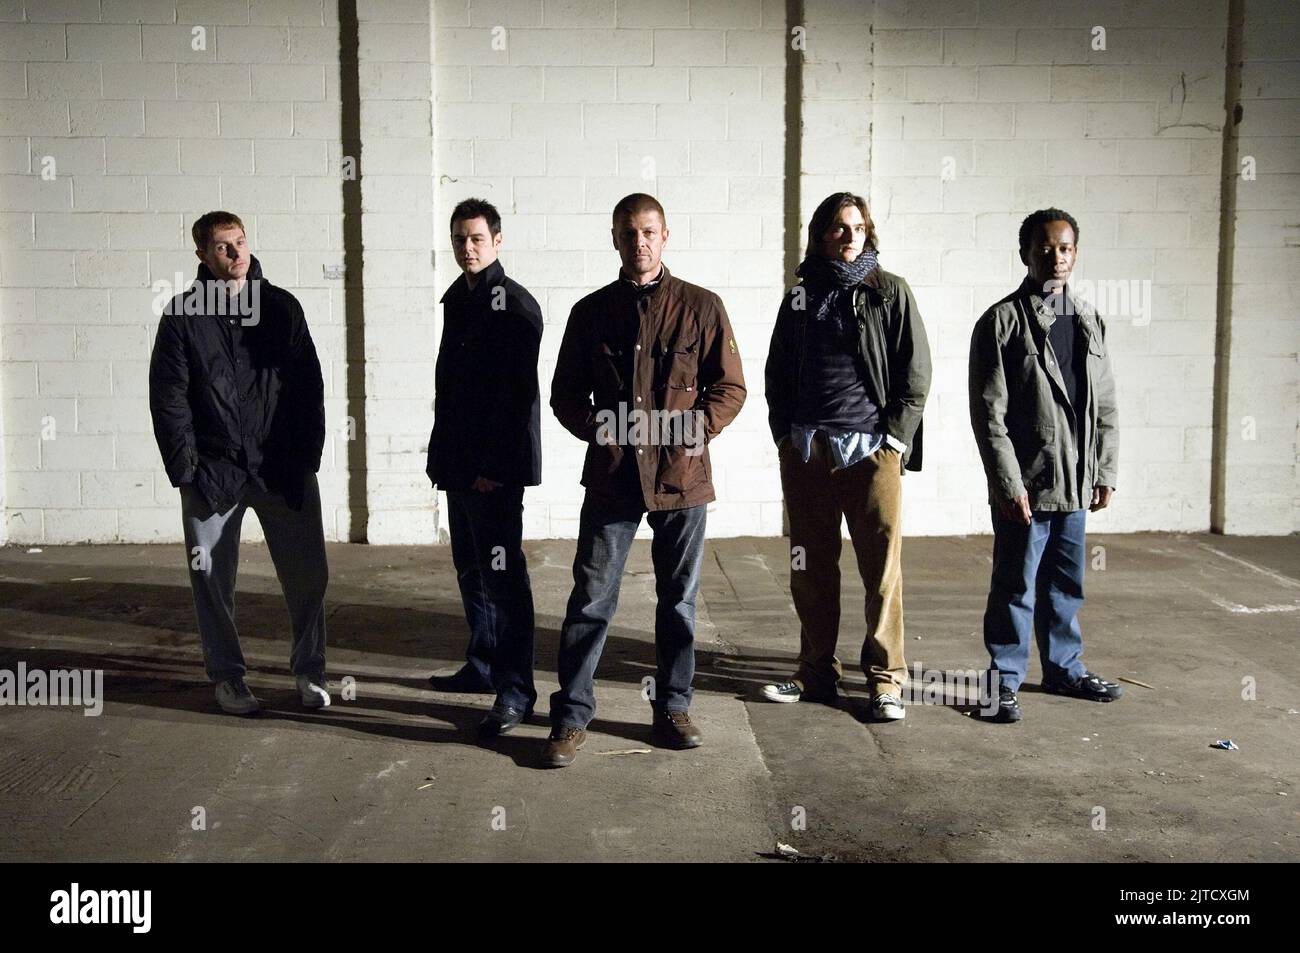 SEAN HARRIS, DANNY DYER, SEAN BEAN, RUPERT FRIEND, LENNIE JAMES, OUTLAW, 2007 Stock Photo